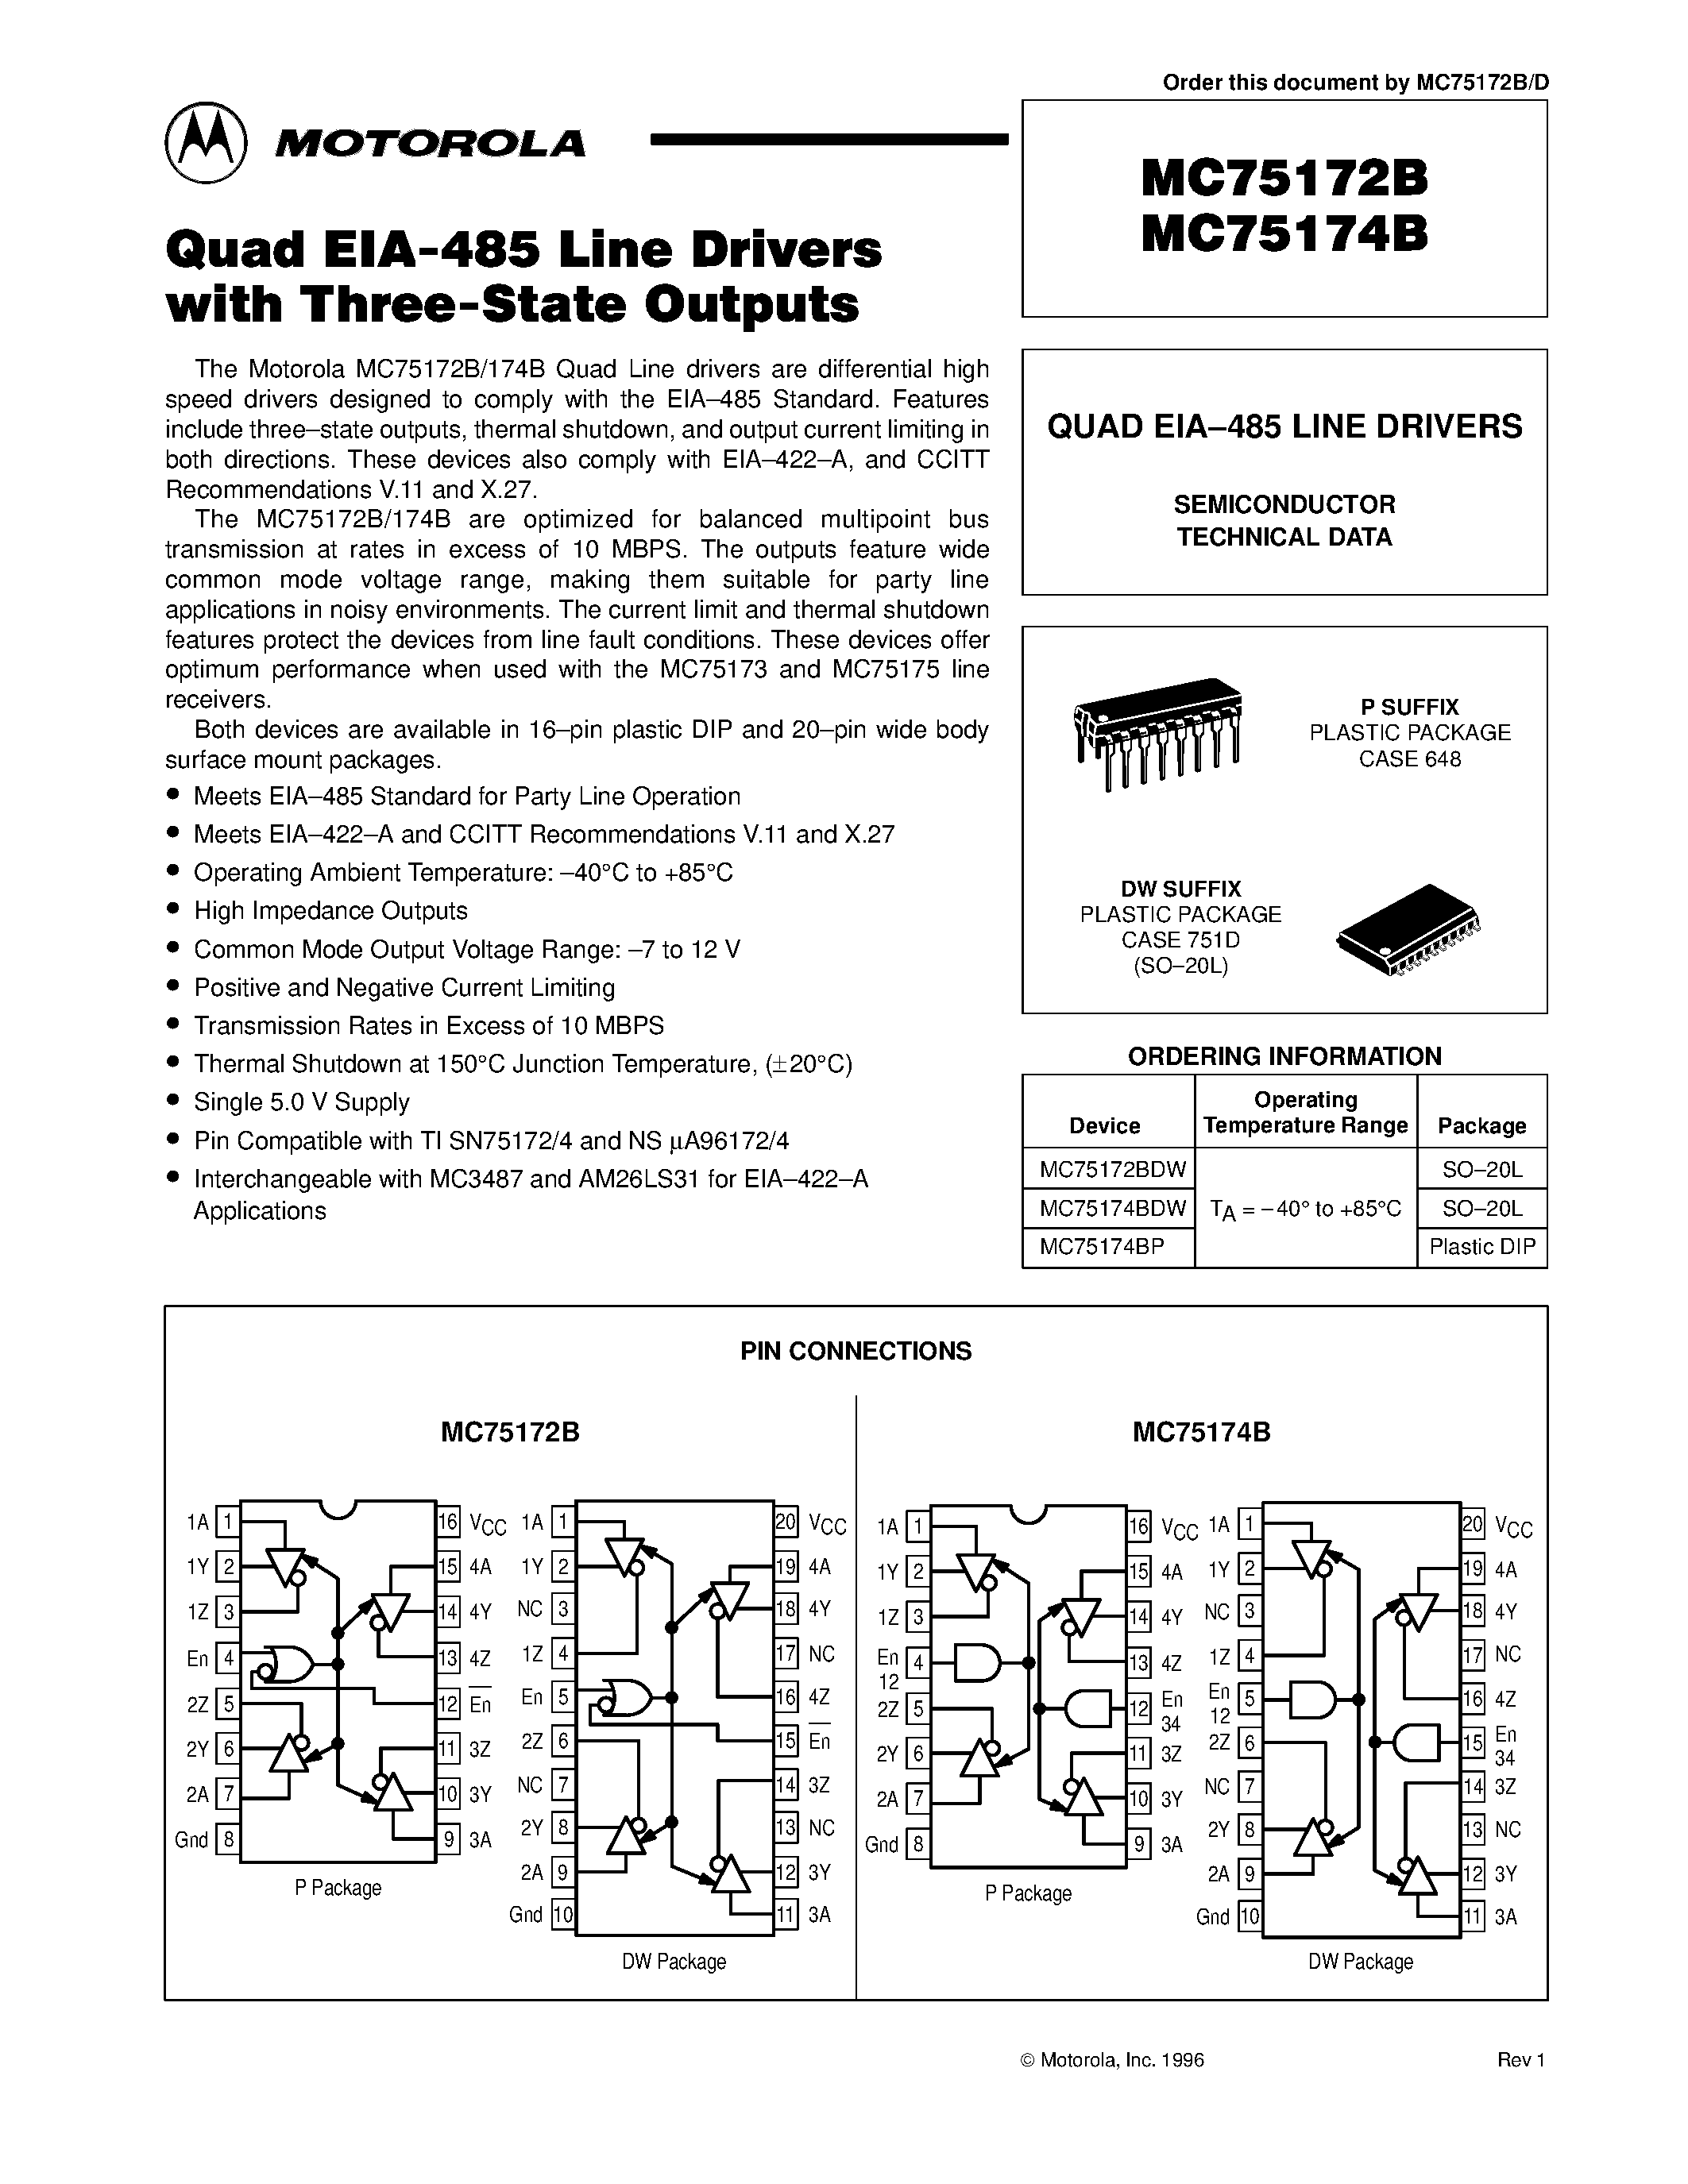 Datasheet MC75172B - (MC75172B / MC75174B) QUAD EIA-485 LINE DRIVERS page 1